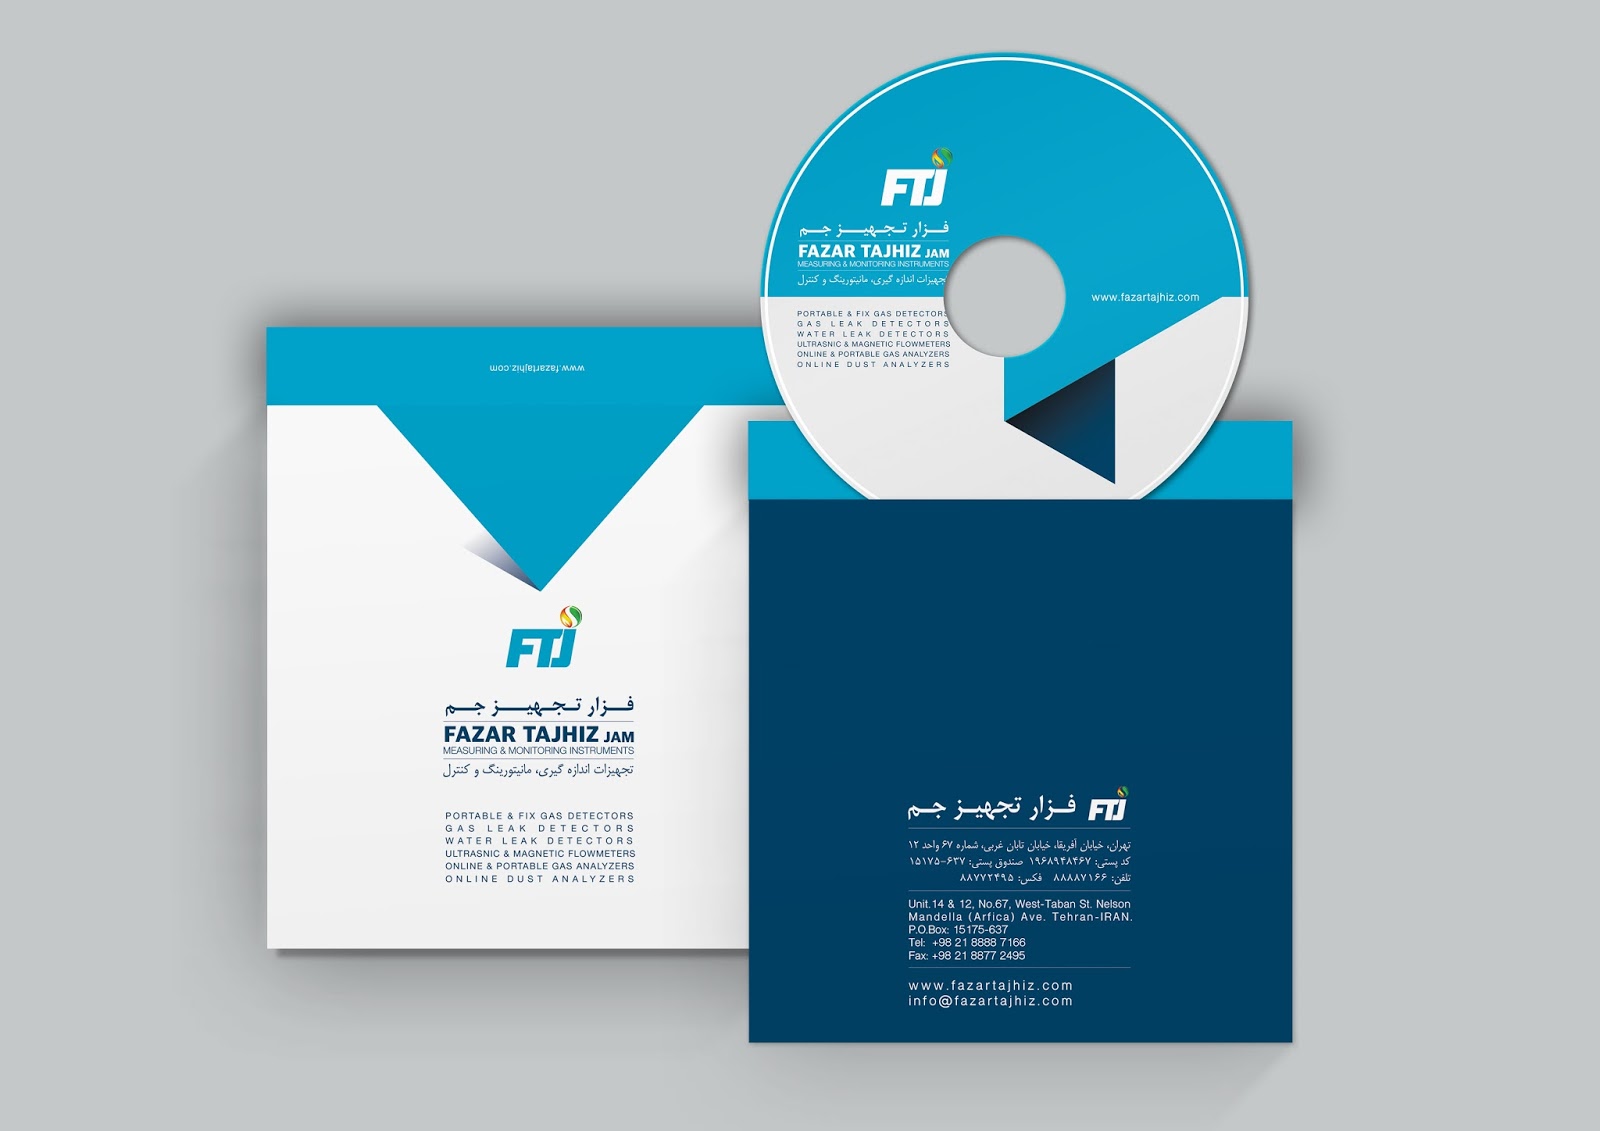 Cover CD ~ Jasa Replikasi CD, Duplikasi CD, Percetakan CD, Burning CD